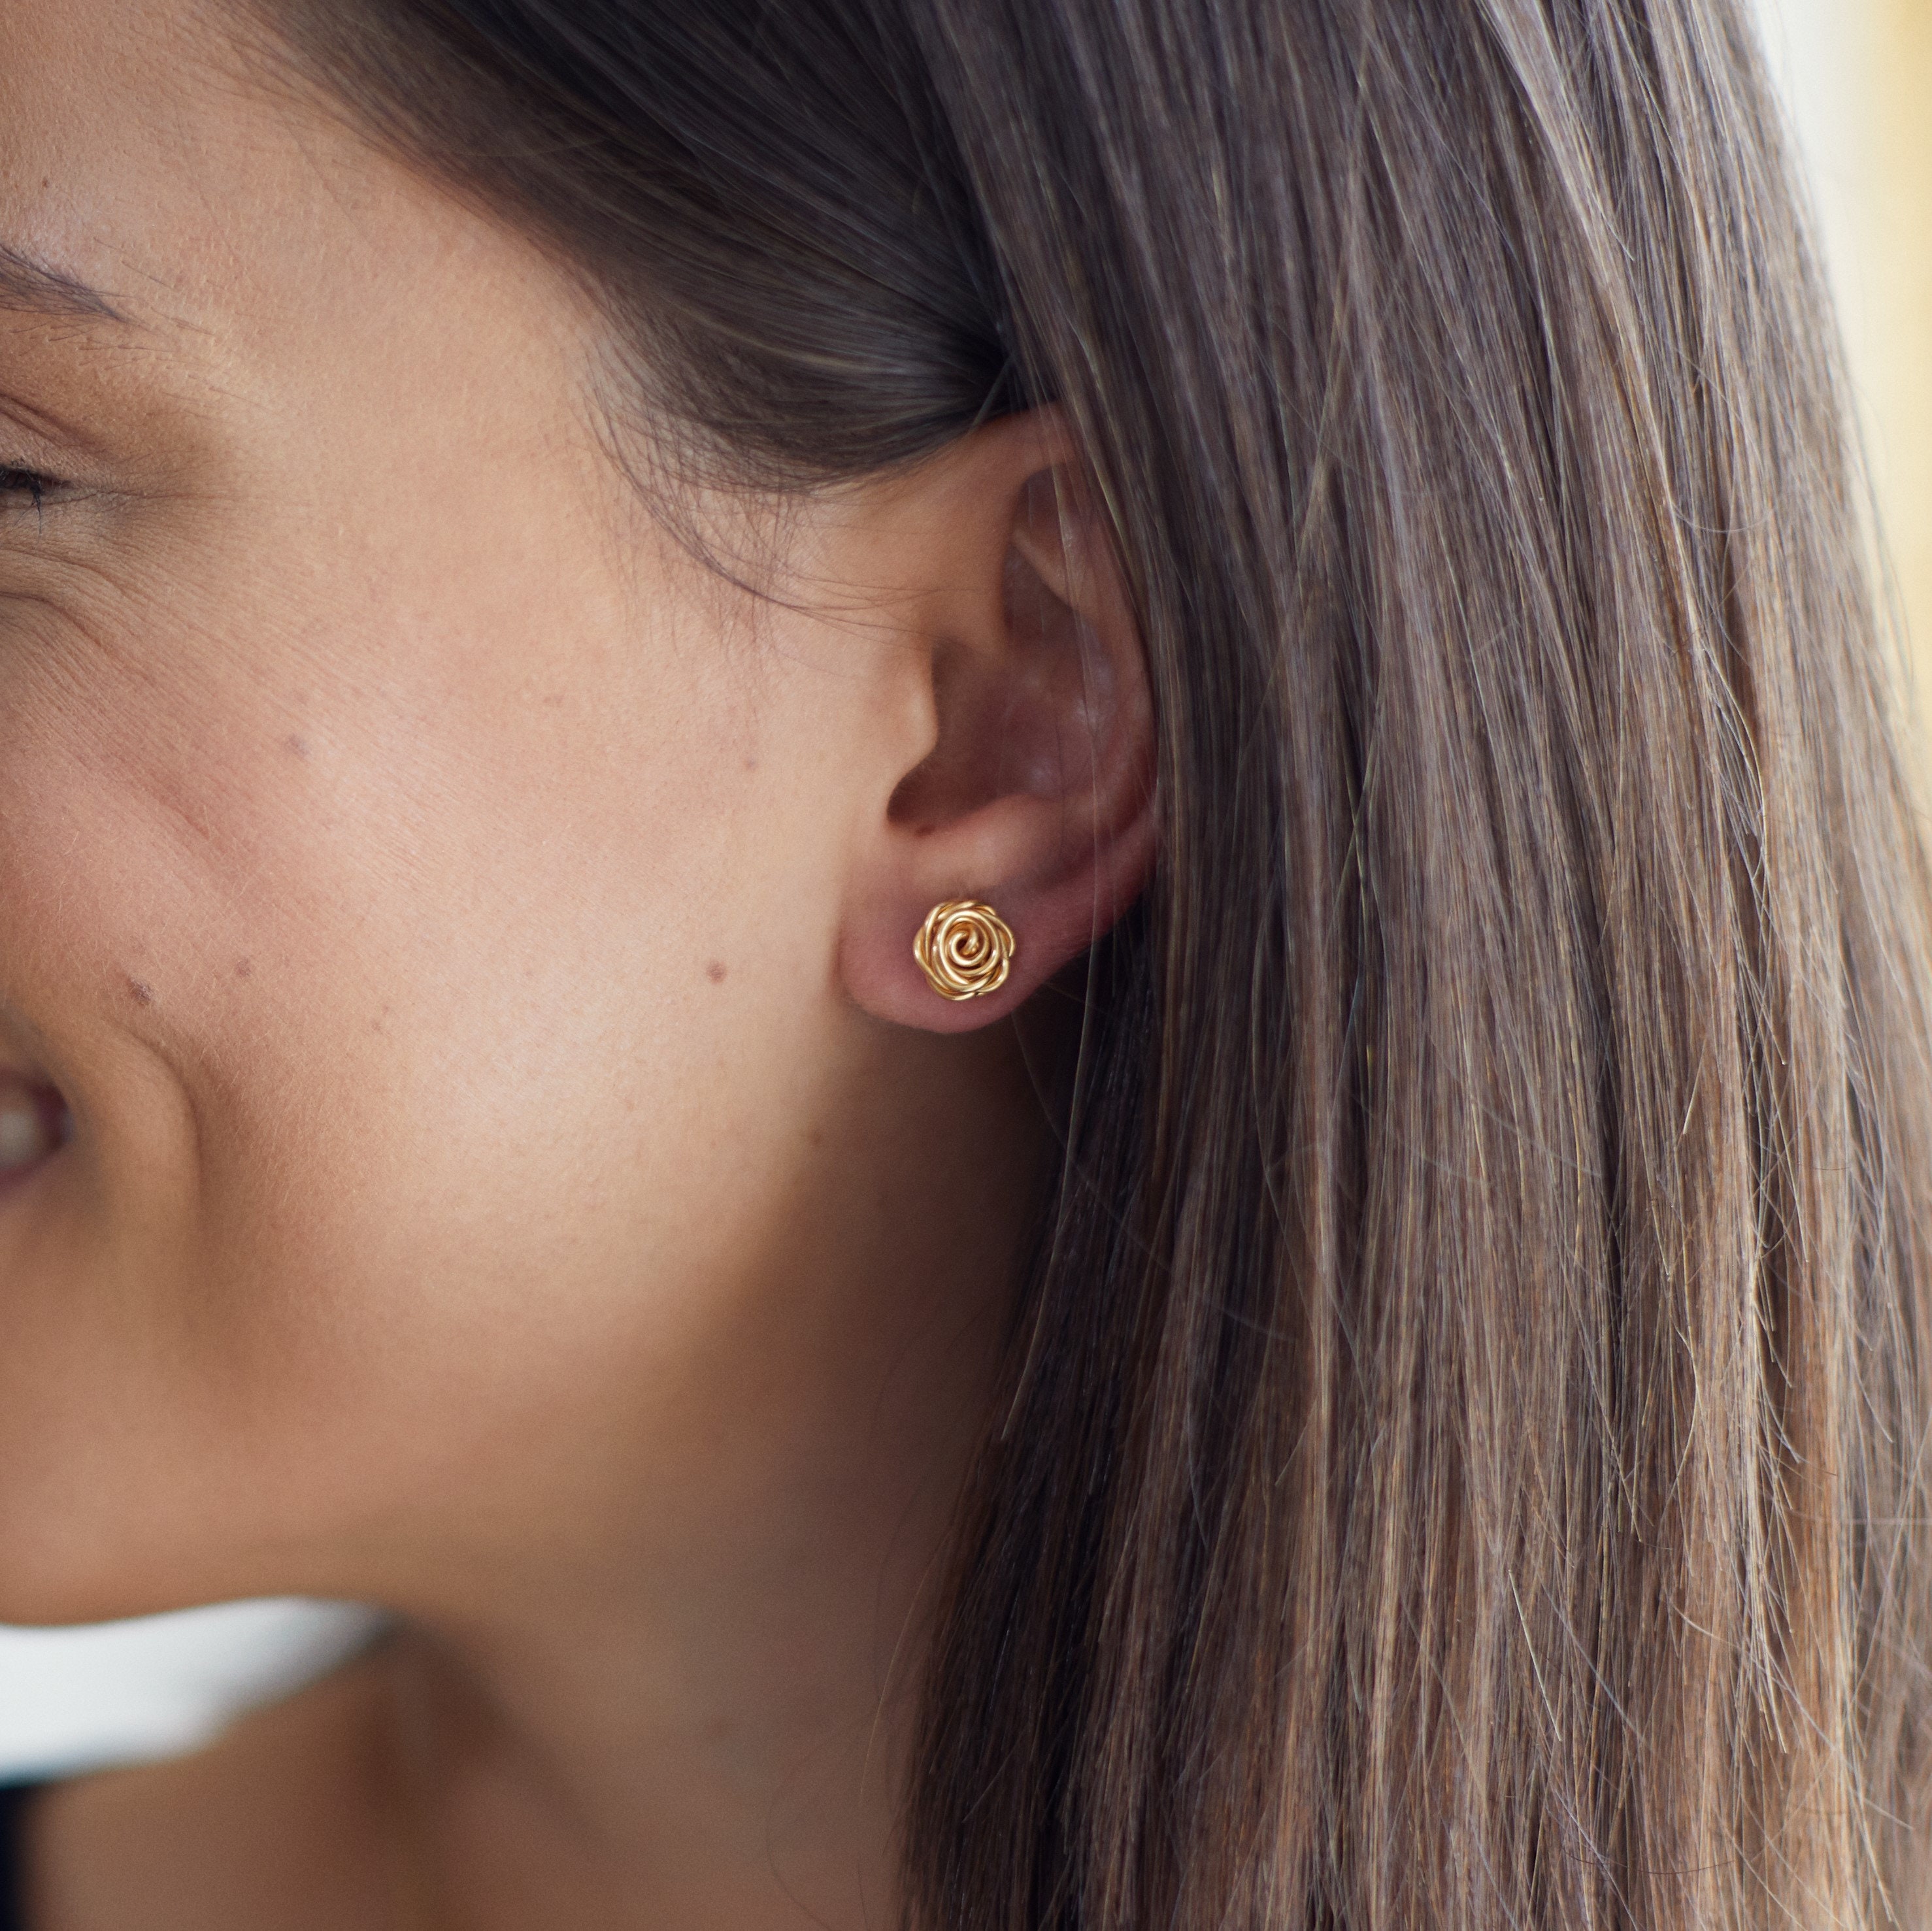 50x 304 Stainless Steel Ear Nuts, Gold Ear Locking Earring Backs for Post Stud  Earrings, Golden Ear Nuts 